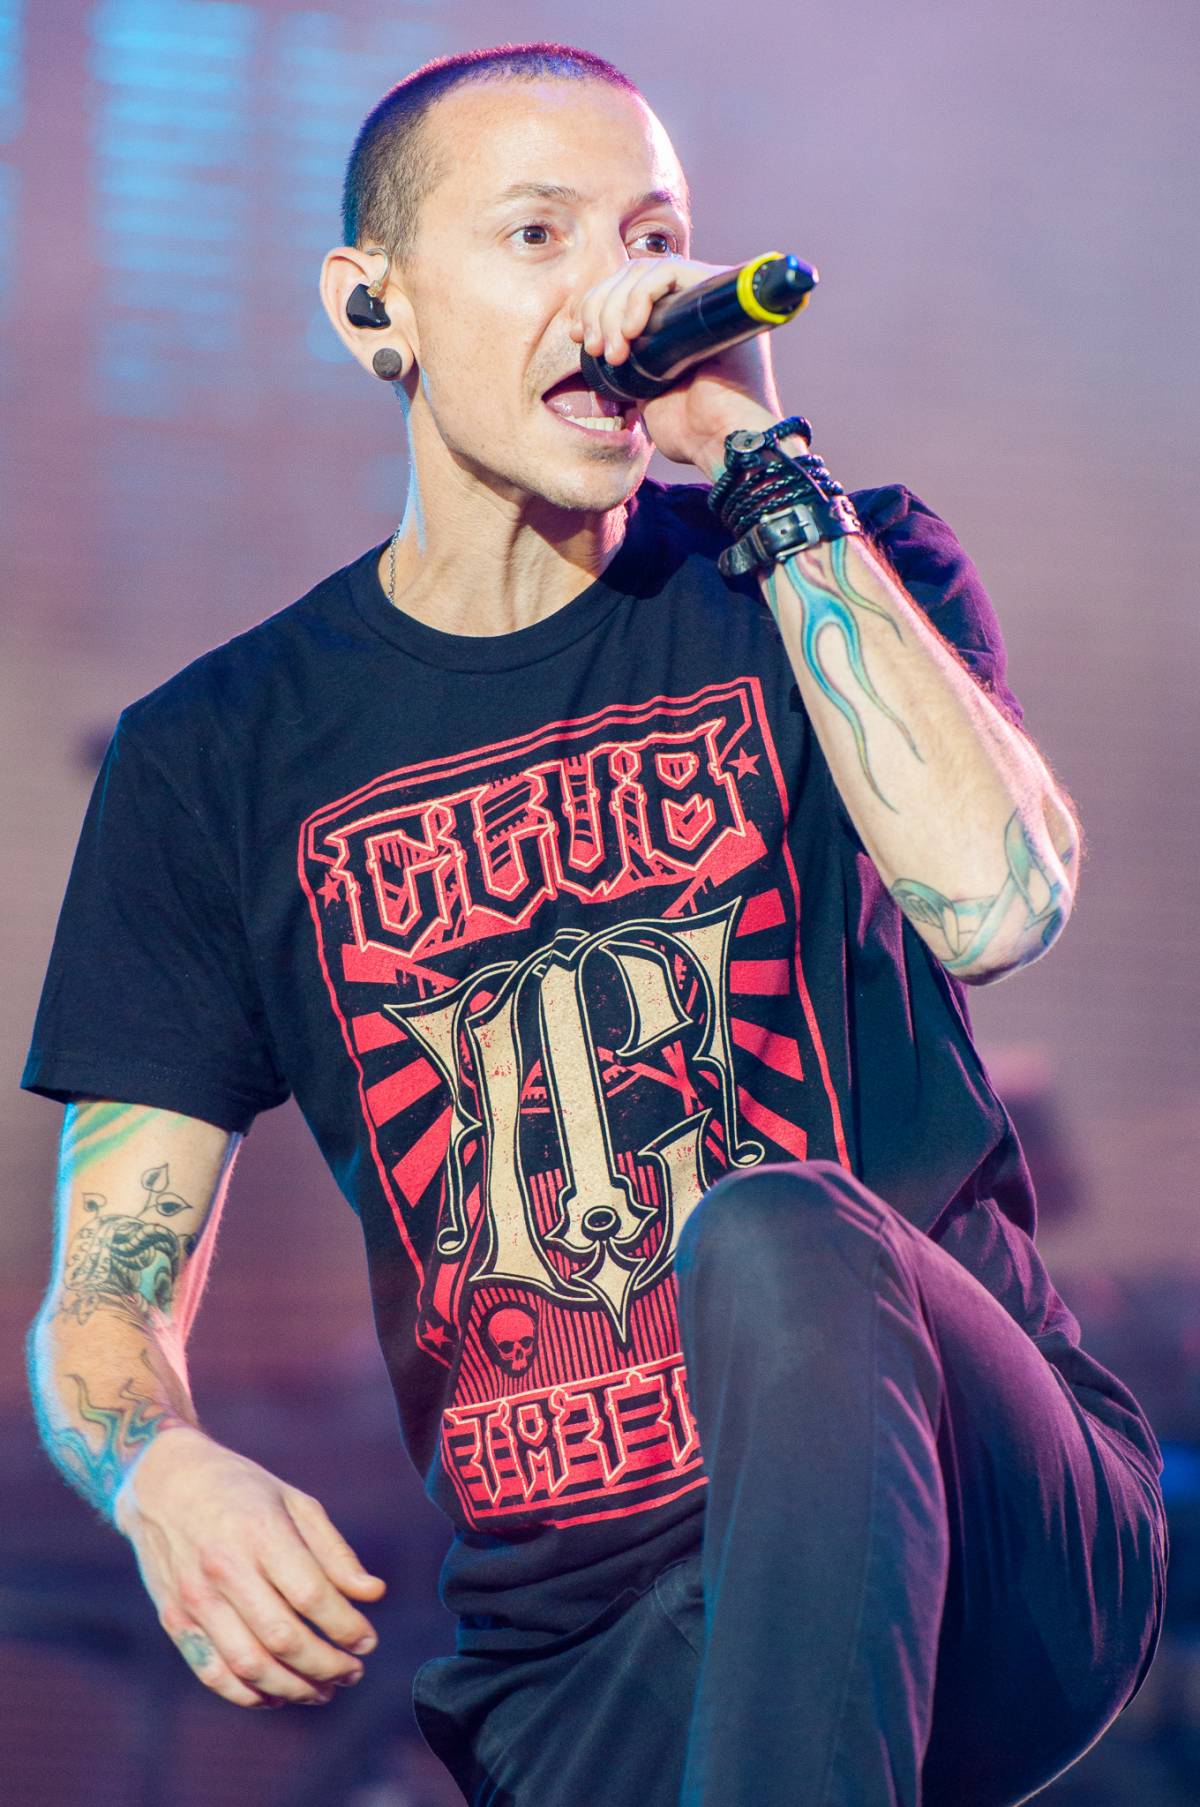 "Cantante dei Linkin Park si è impiccato in casa"